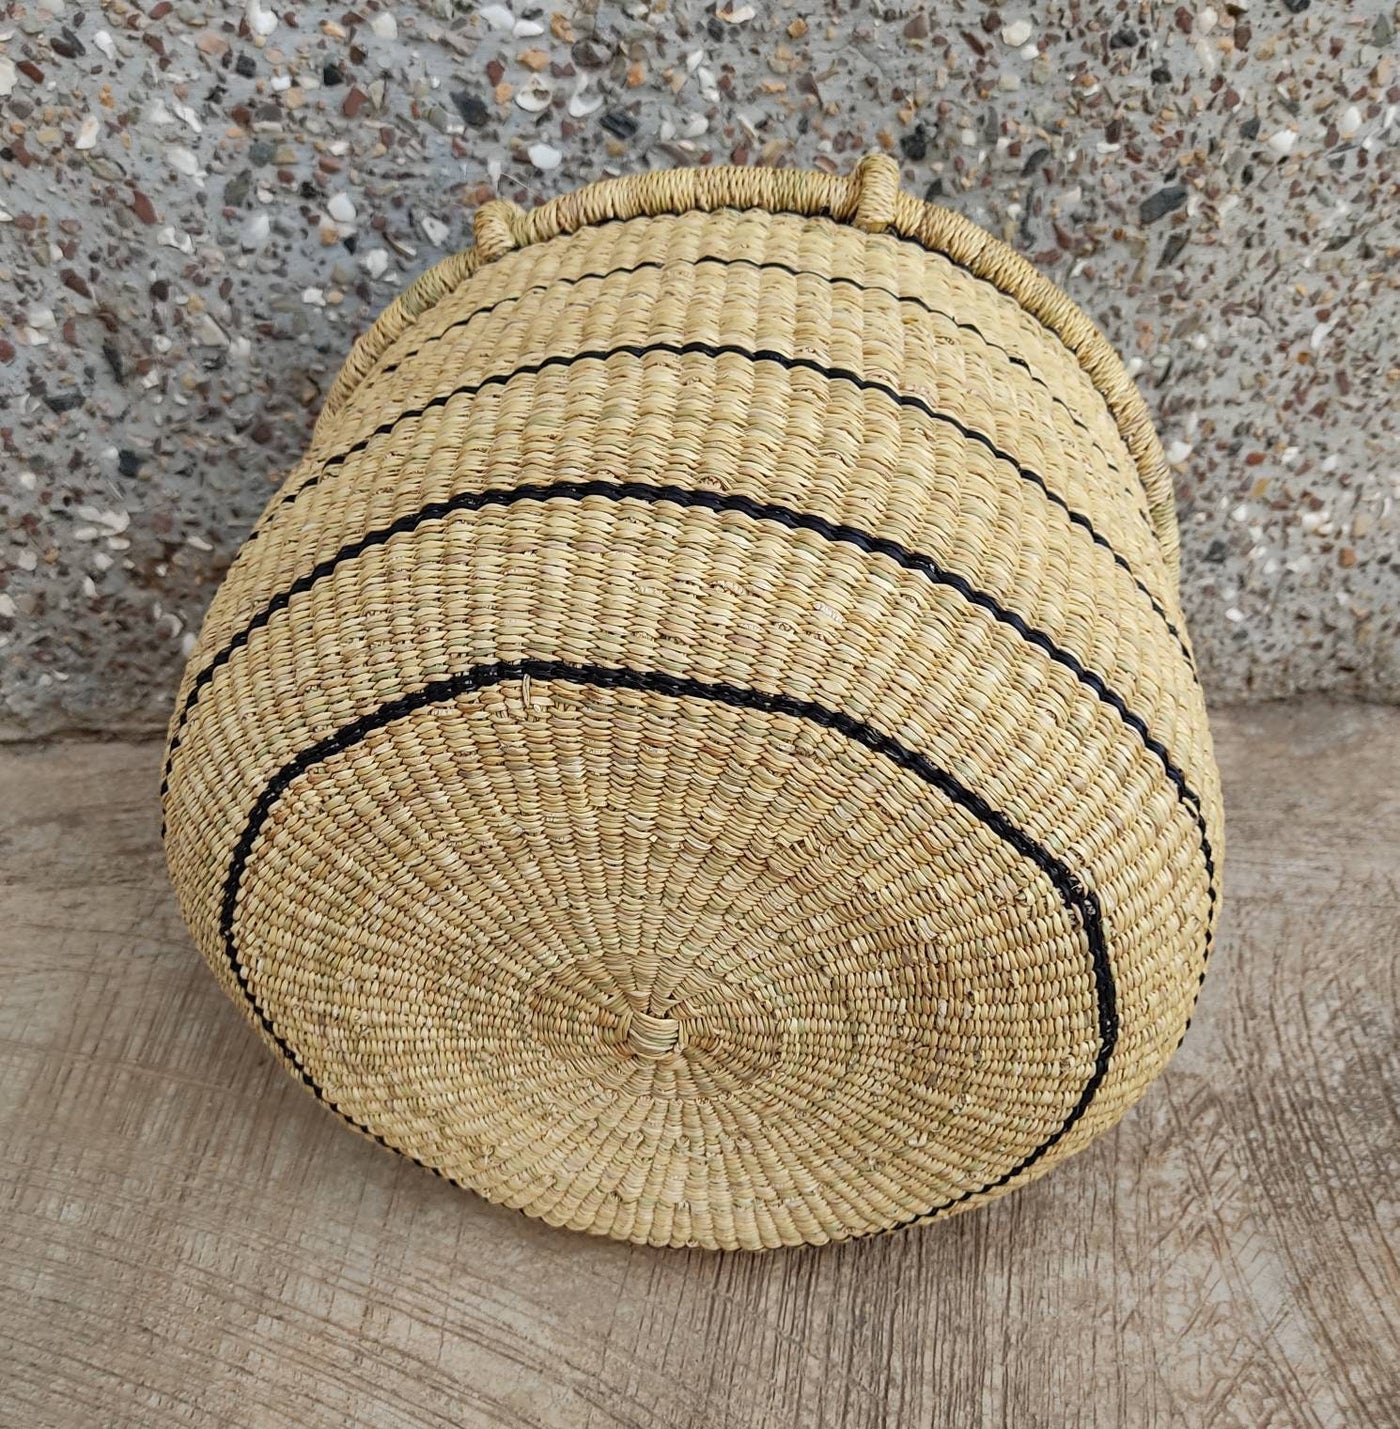 Market Basket | Storage basket | African basket | Straw basket | Woven basket | Gift basket | African market basket| handmade basket - AfricanheritageGH